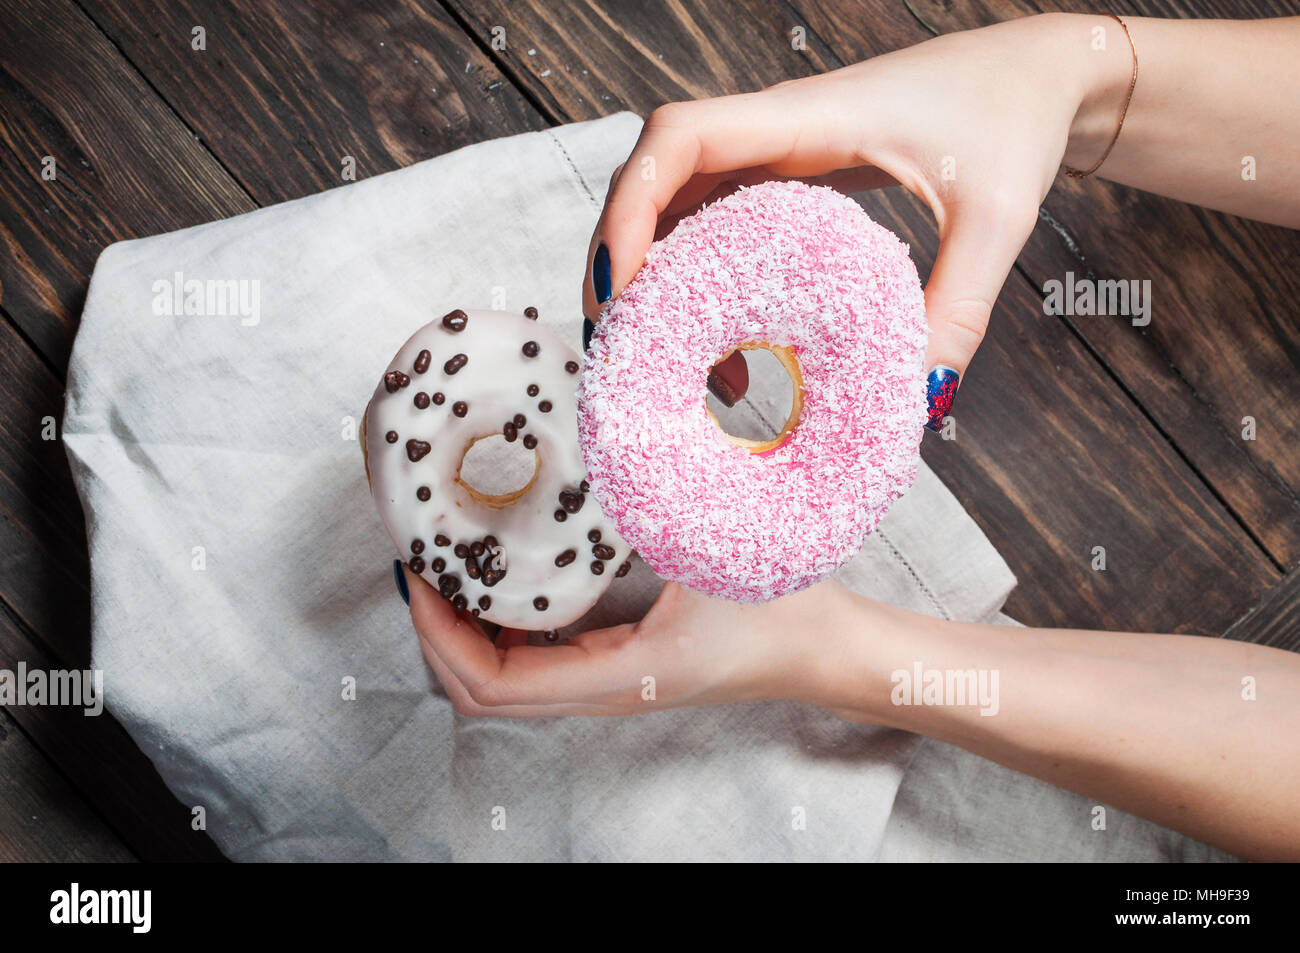 La recogida de la mano femenina dulce donut azucarado de mesa de cocina de madera rústica, deliciosa panadería donuts Fotografía cenital, vista superior Foto de stock